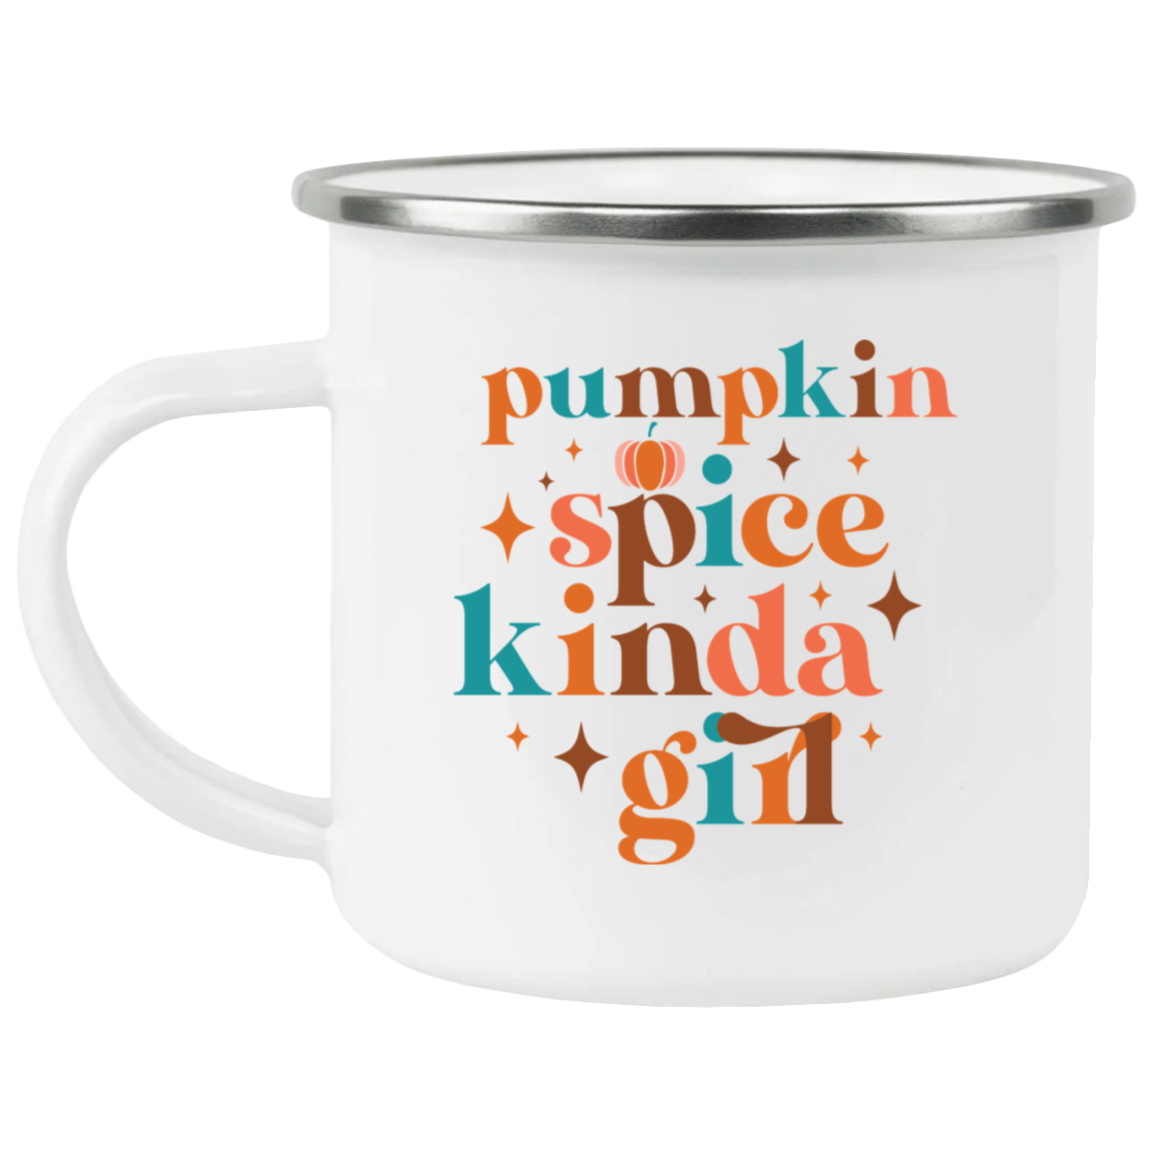 Pumpkin Spice Kinda Girl Mug